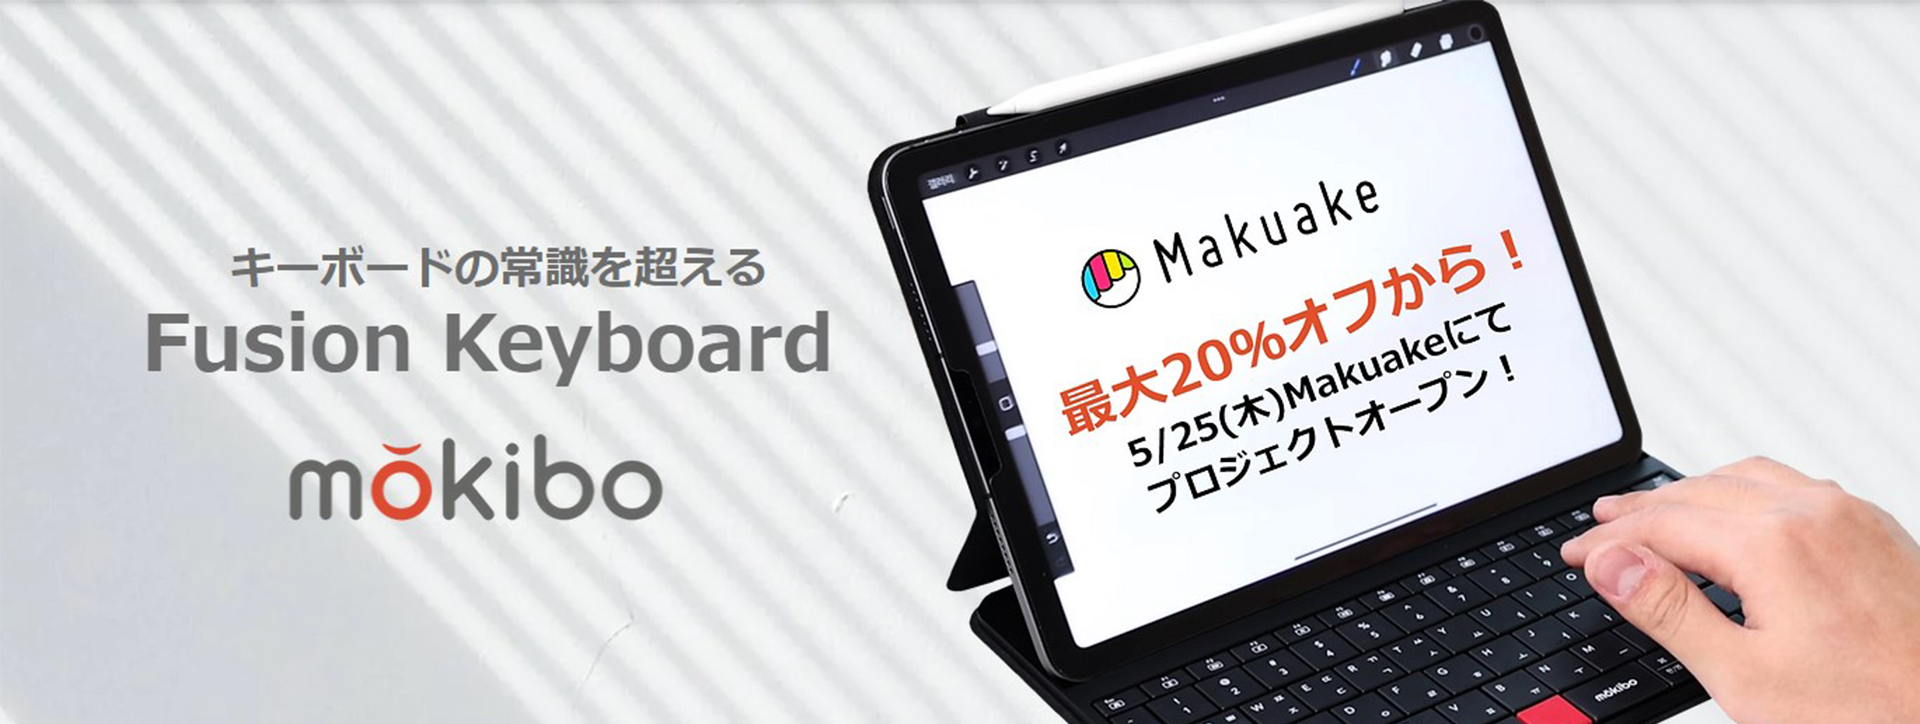 キーをなぞると自動でタッチパッドにもなる進化系キーボード「mokibo Fusion Keyboard」